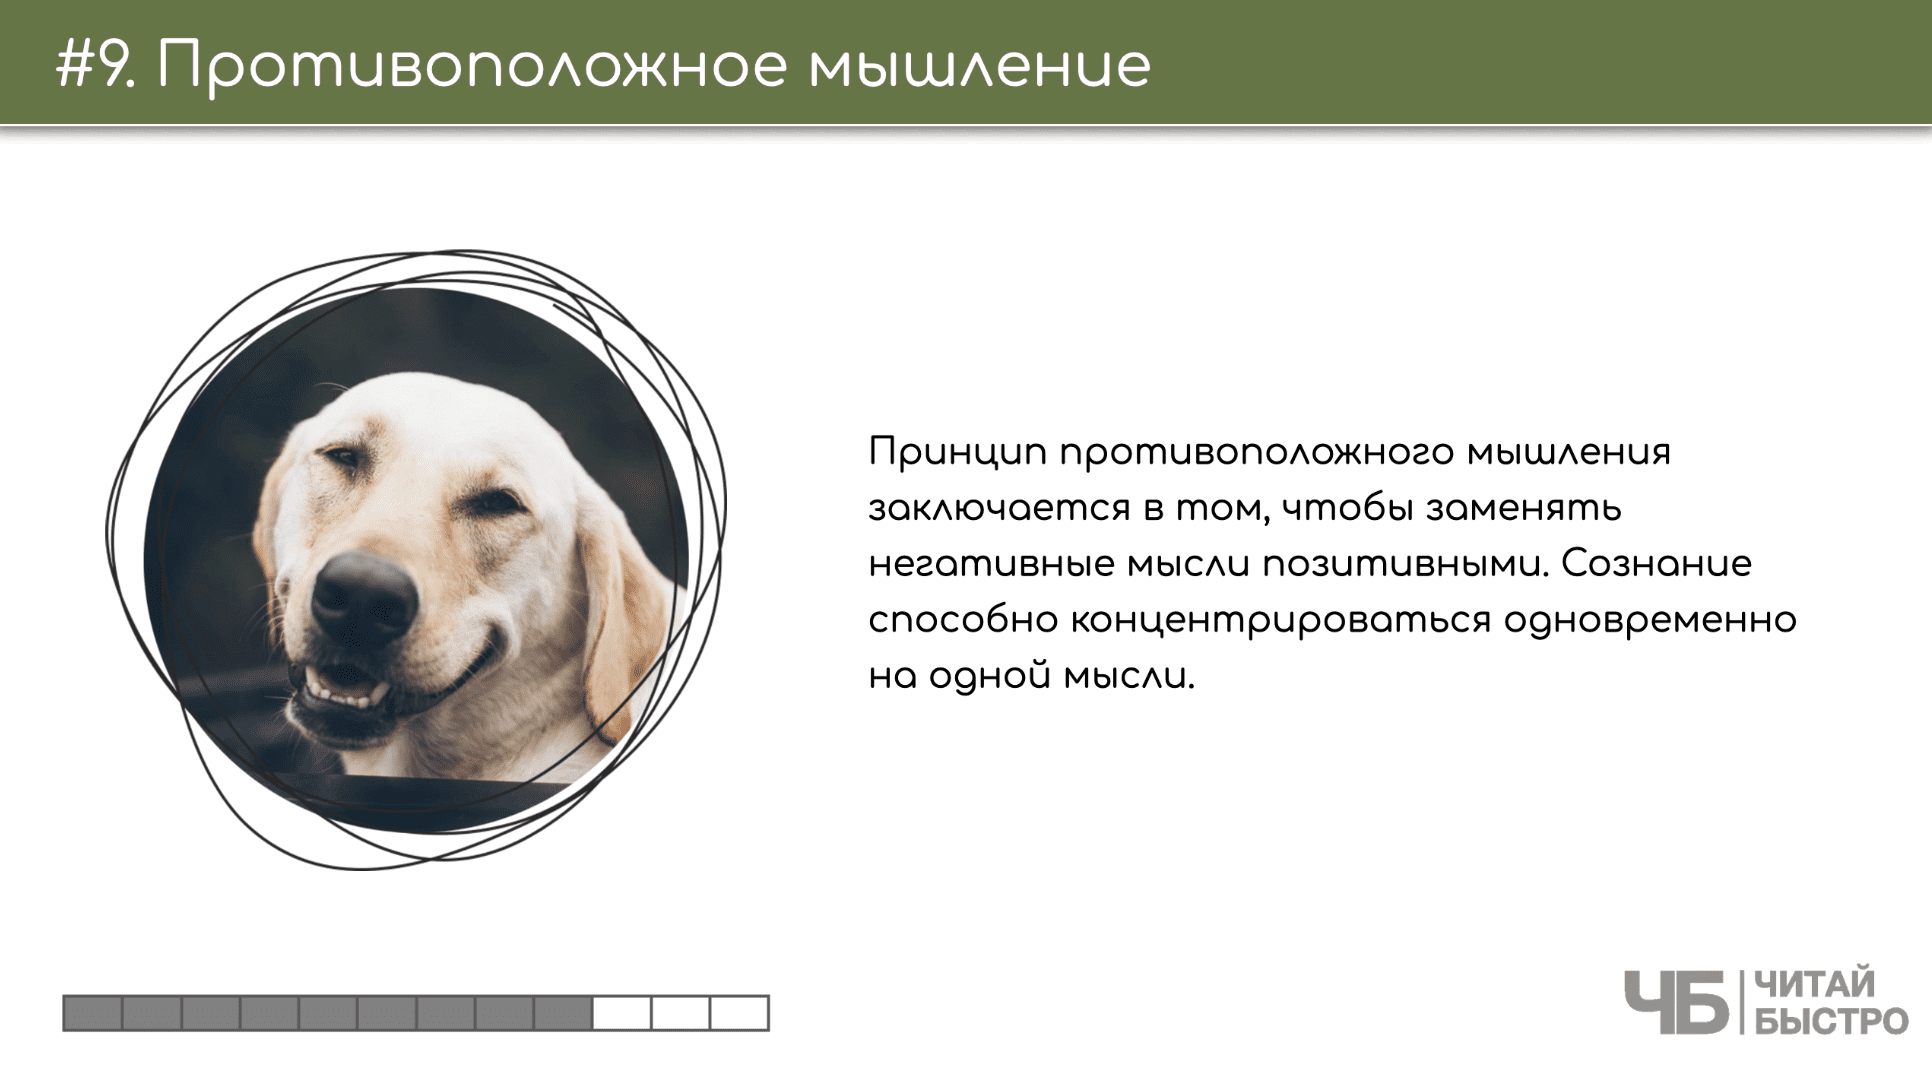 На этом слайде изображен тезис о противоположном мышлении и иллюстрация собаки.